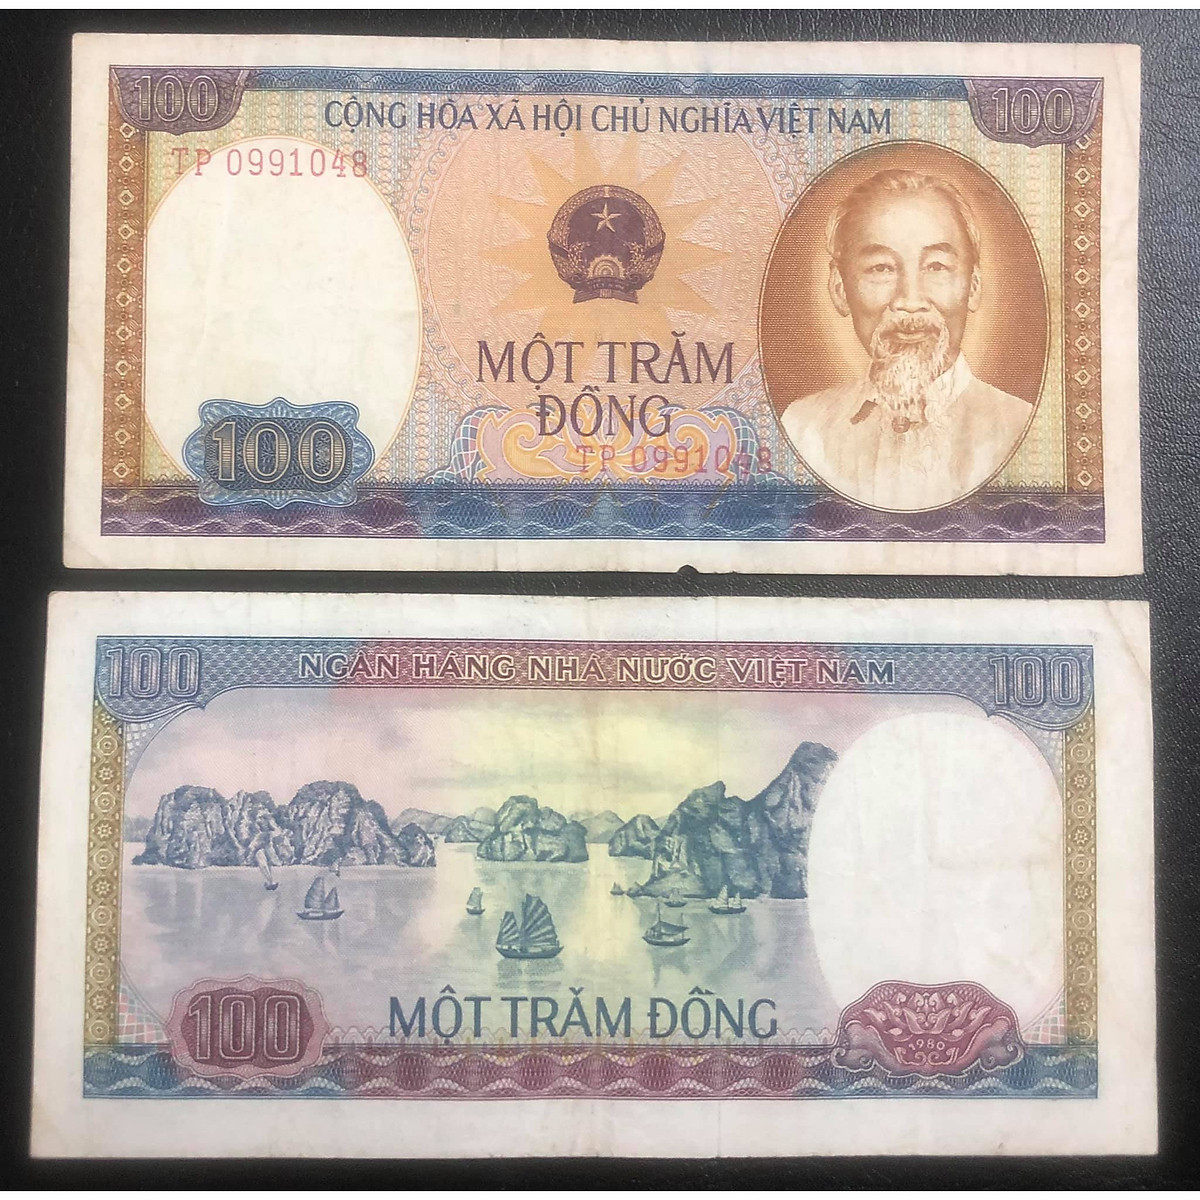 Tờ tiền 100 đồng Việt Nam có độ bền và sức sống lâu dài. Hãy xem ảnh để cảm nhận được sự truyền cảm hứng và tình yêu dành cho đất nước Việt Nam. Ảnh của tiền sẽ mang lại cho bạn cảm giác tự hào và niềm hạnh phúc.